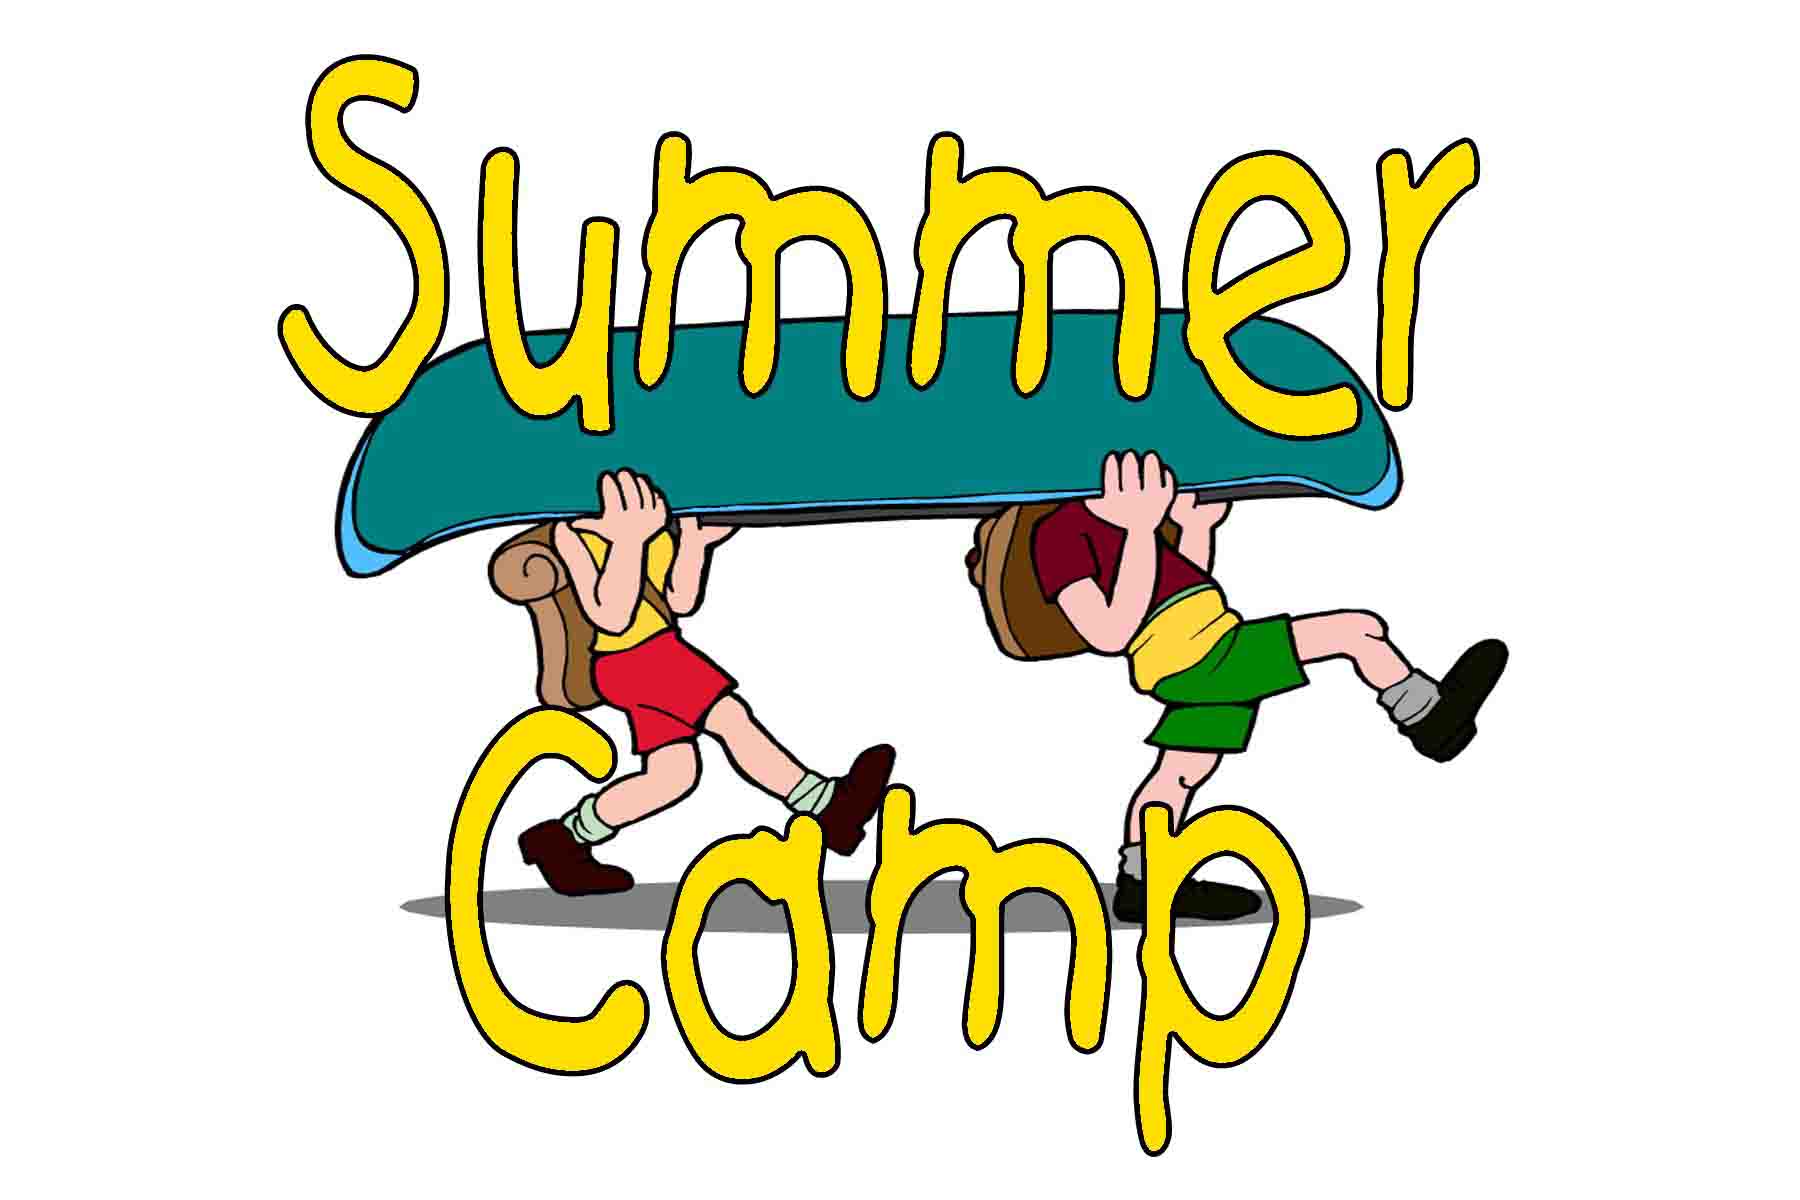 kids summer camp clipart - Summer Camp Clipart